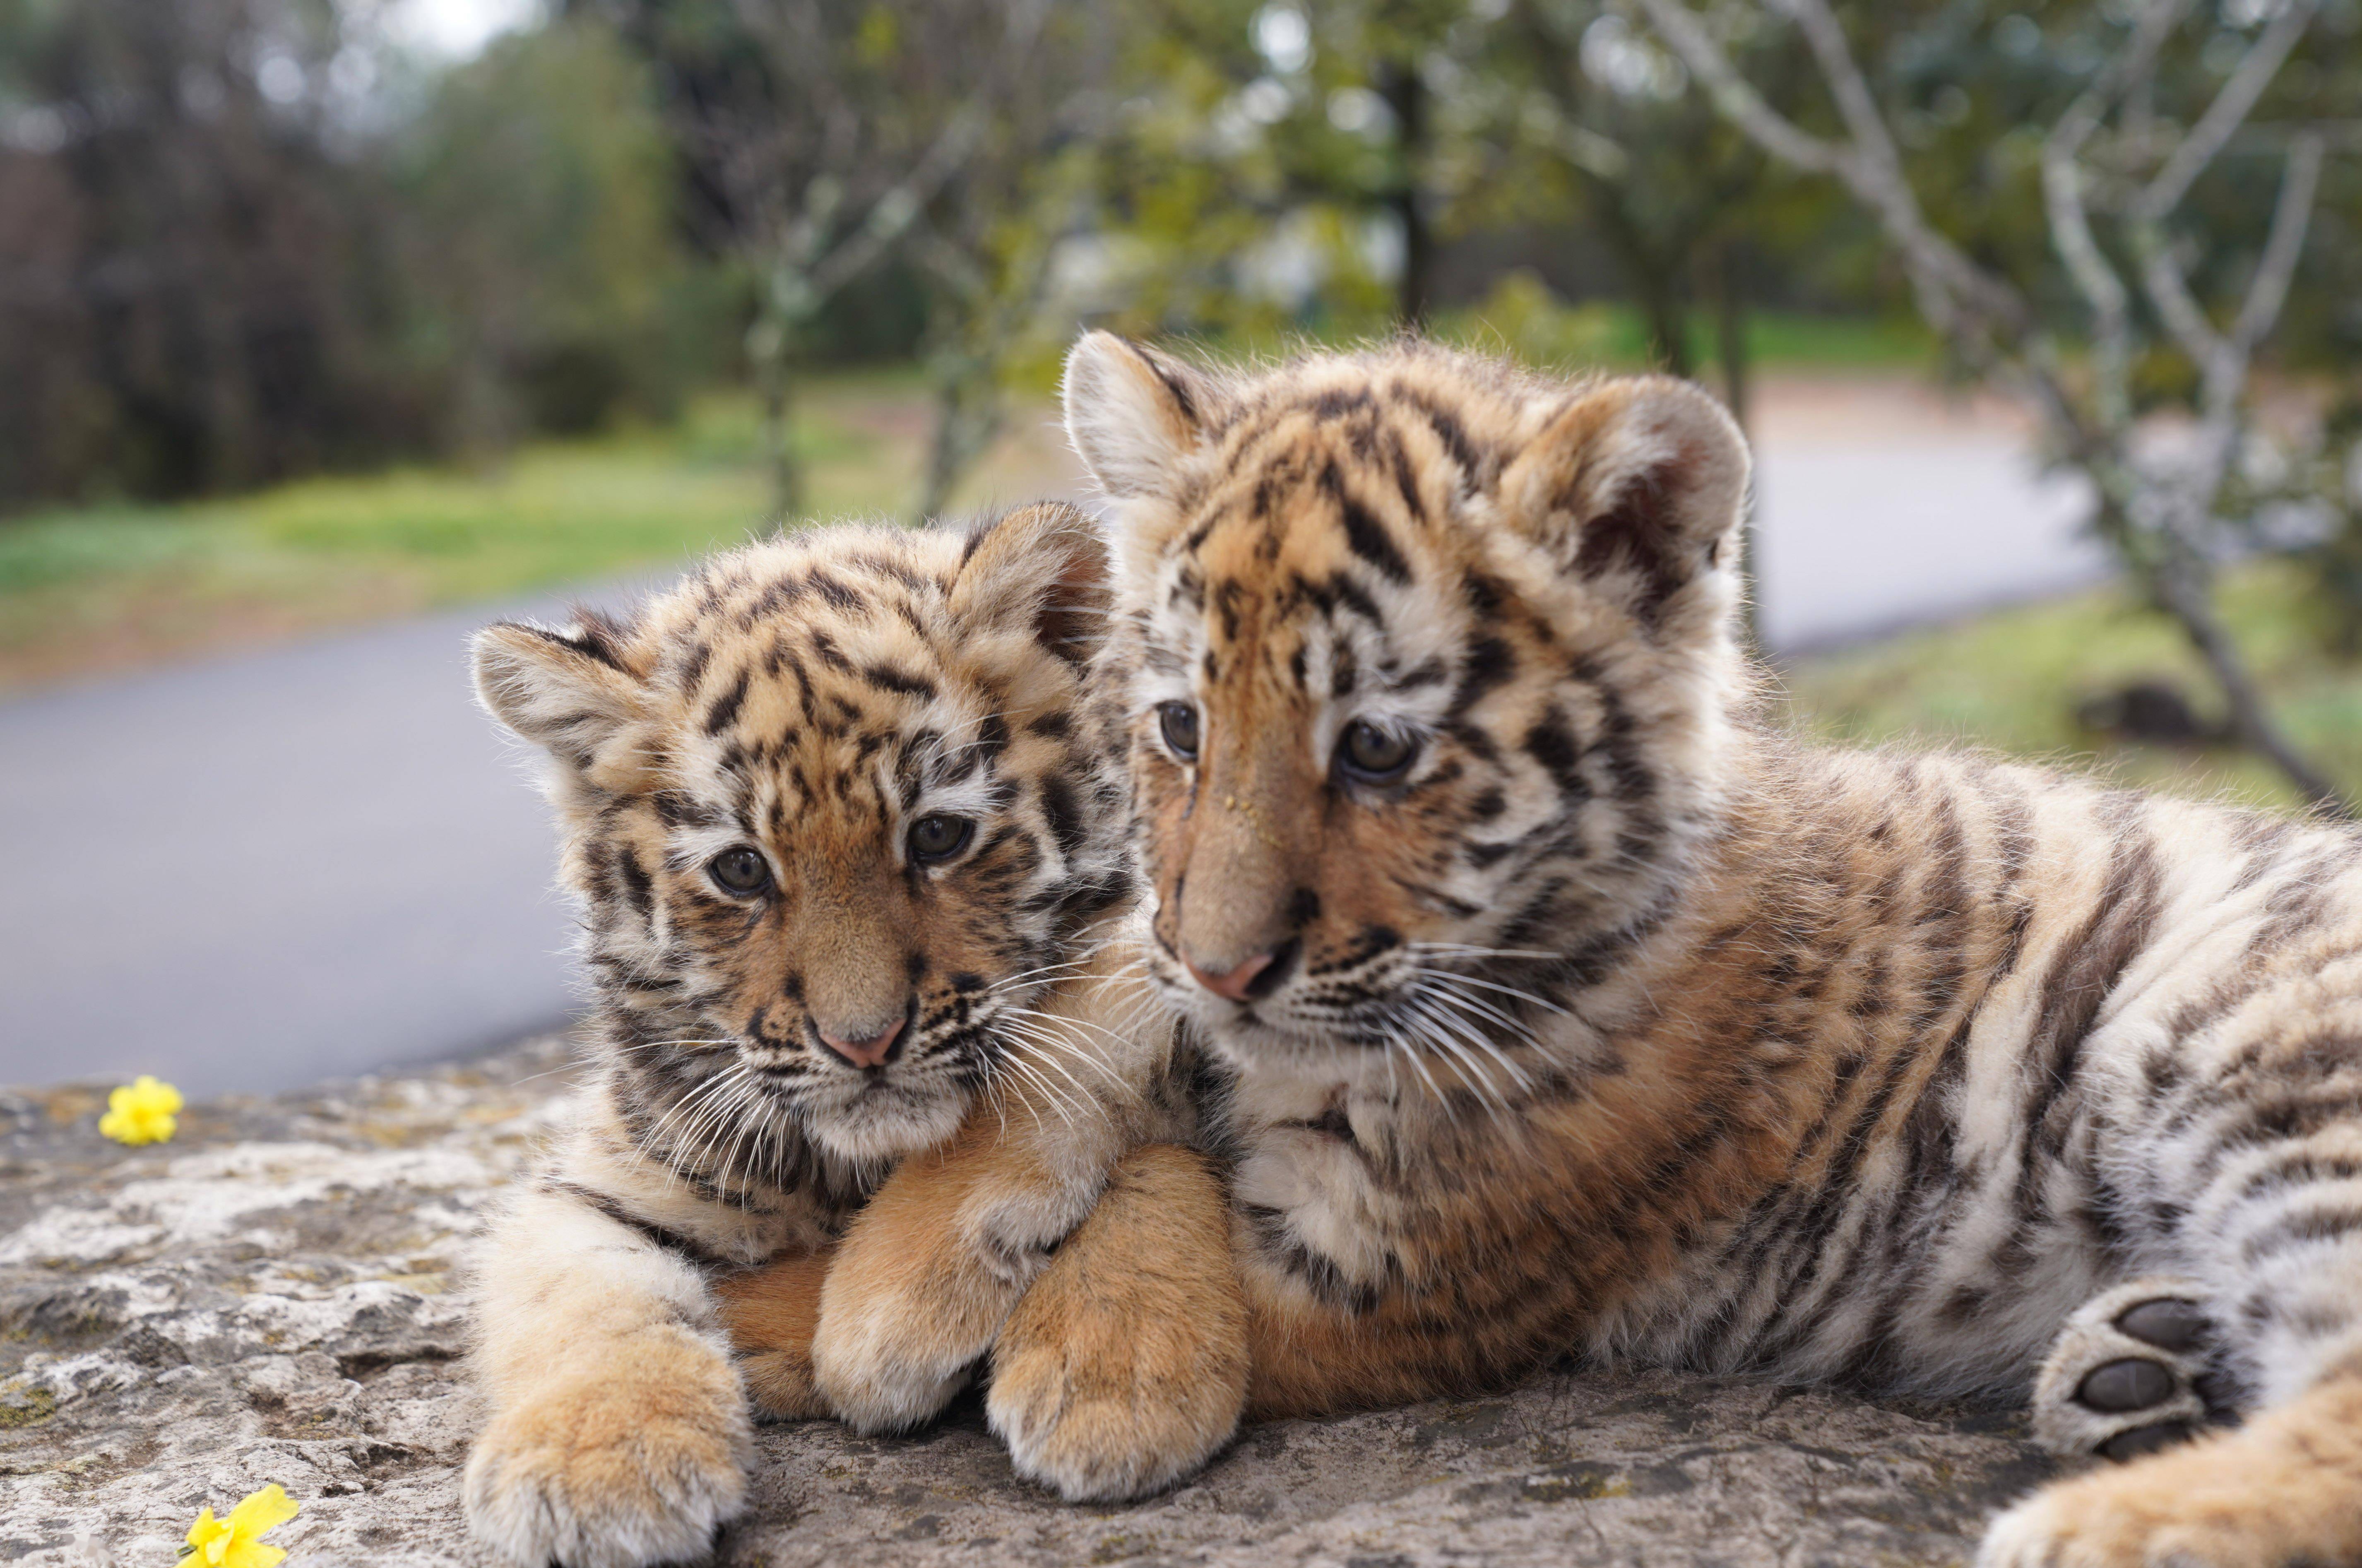 虎年春节临近,云南野生动物园去年出生的7只小老虎将陆续与游客见面